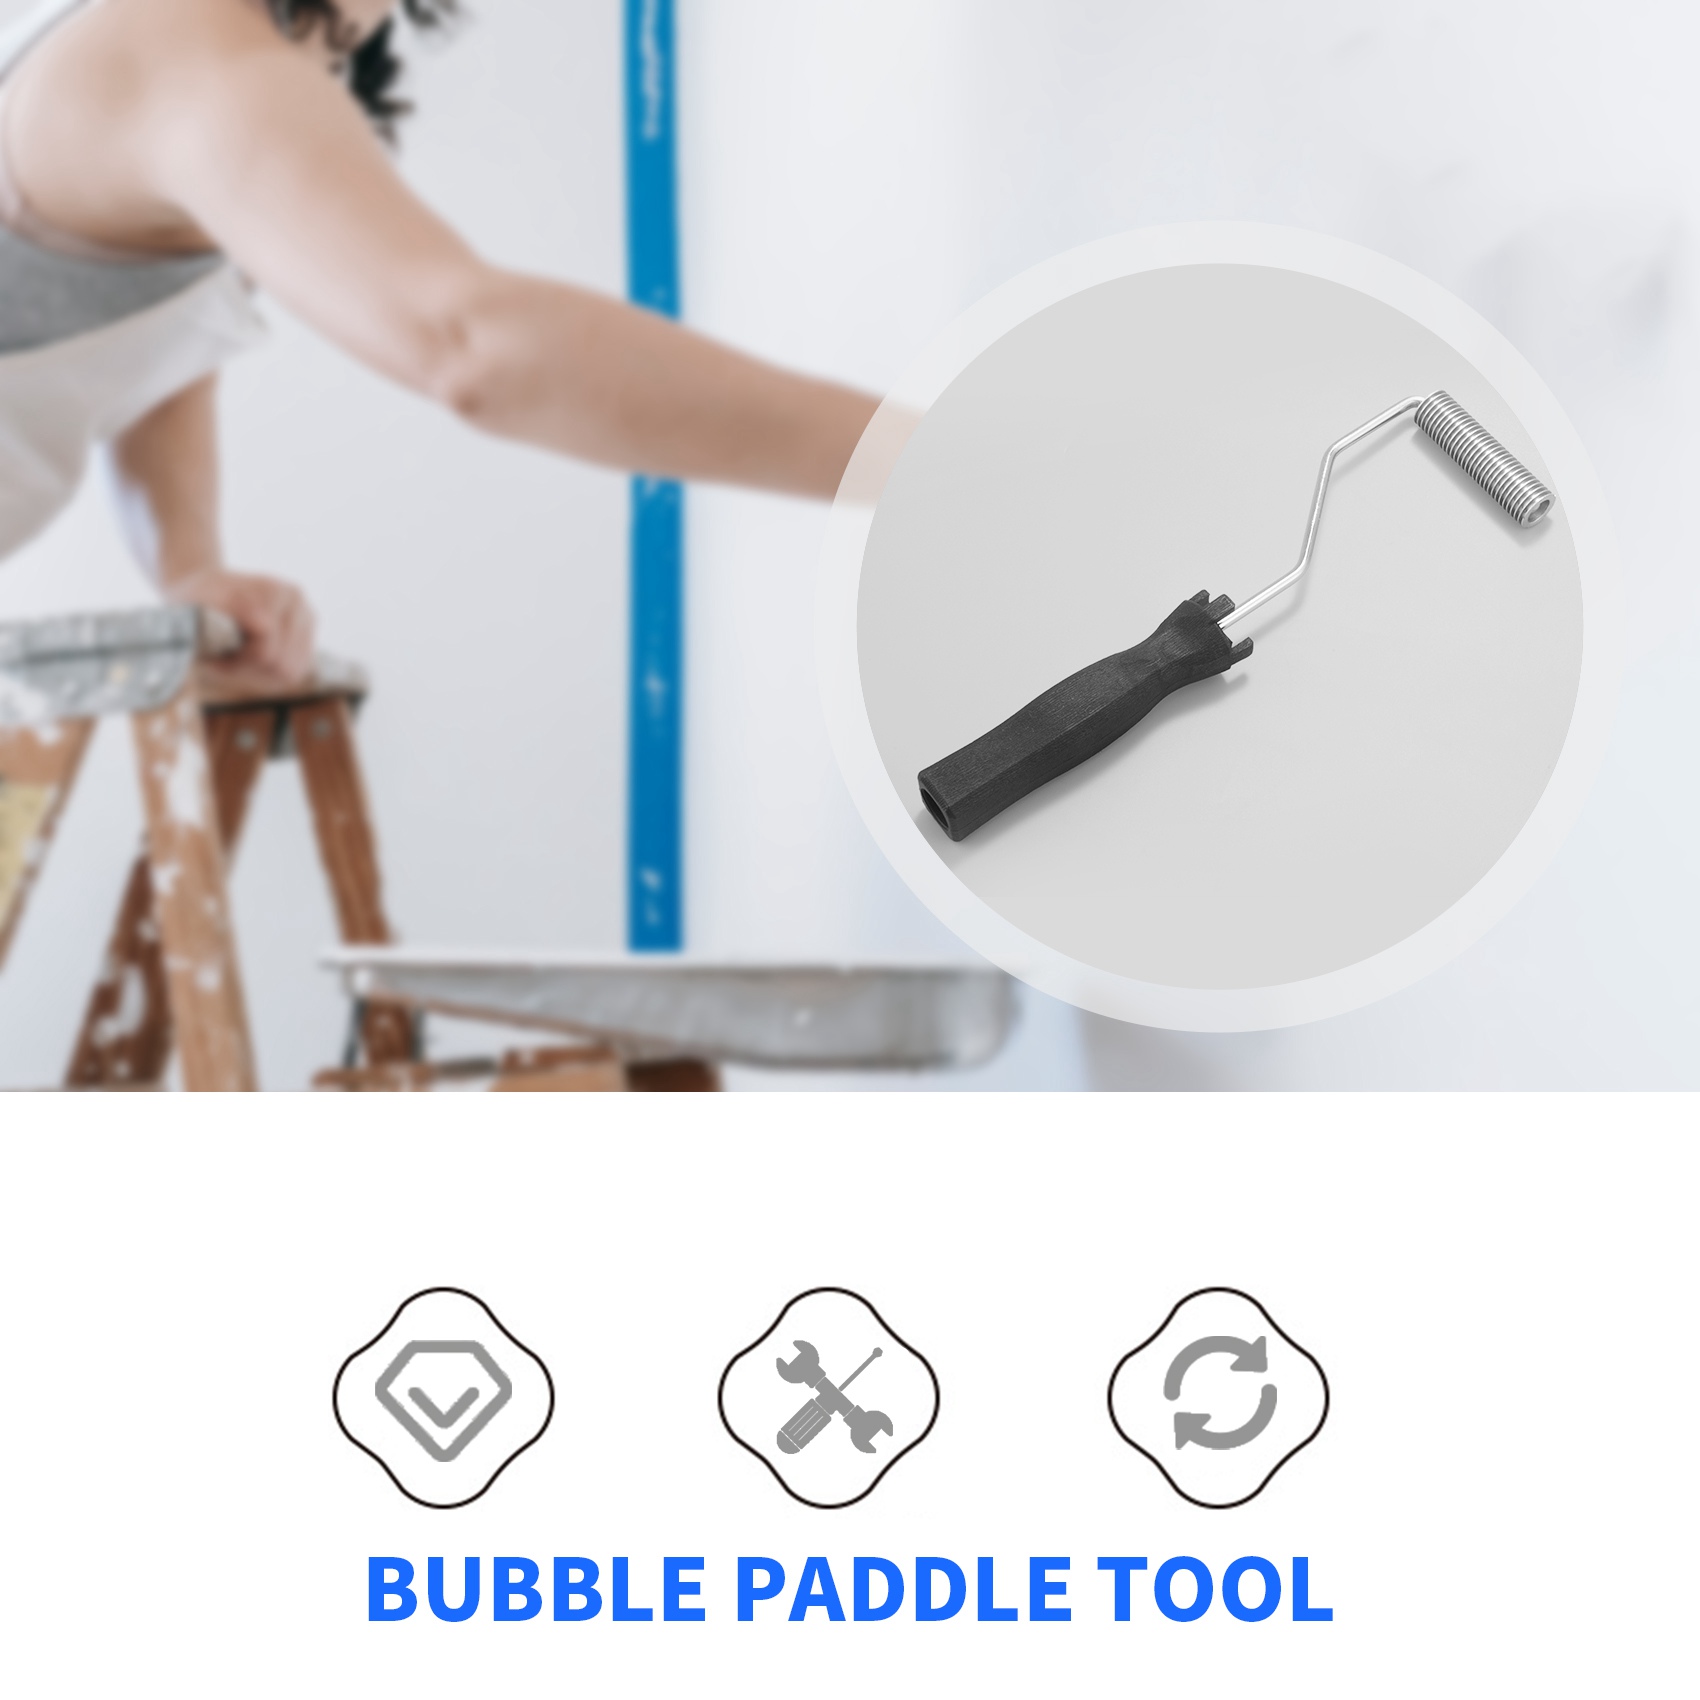 3 stk 31cm glasfiber rulle kit boble padle værktøj laminerings rulle kit til frp skimmel værktøj børste rulle shopping